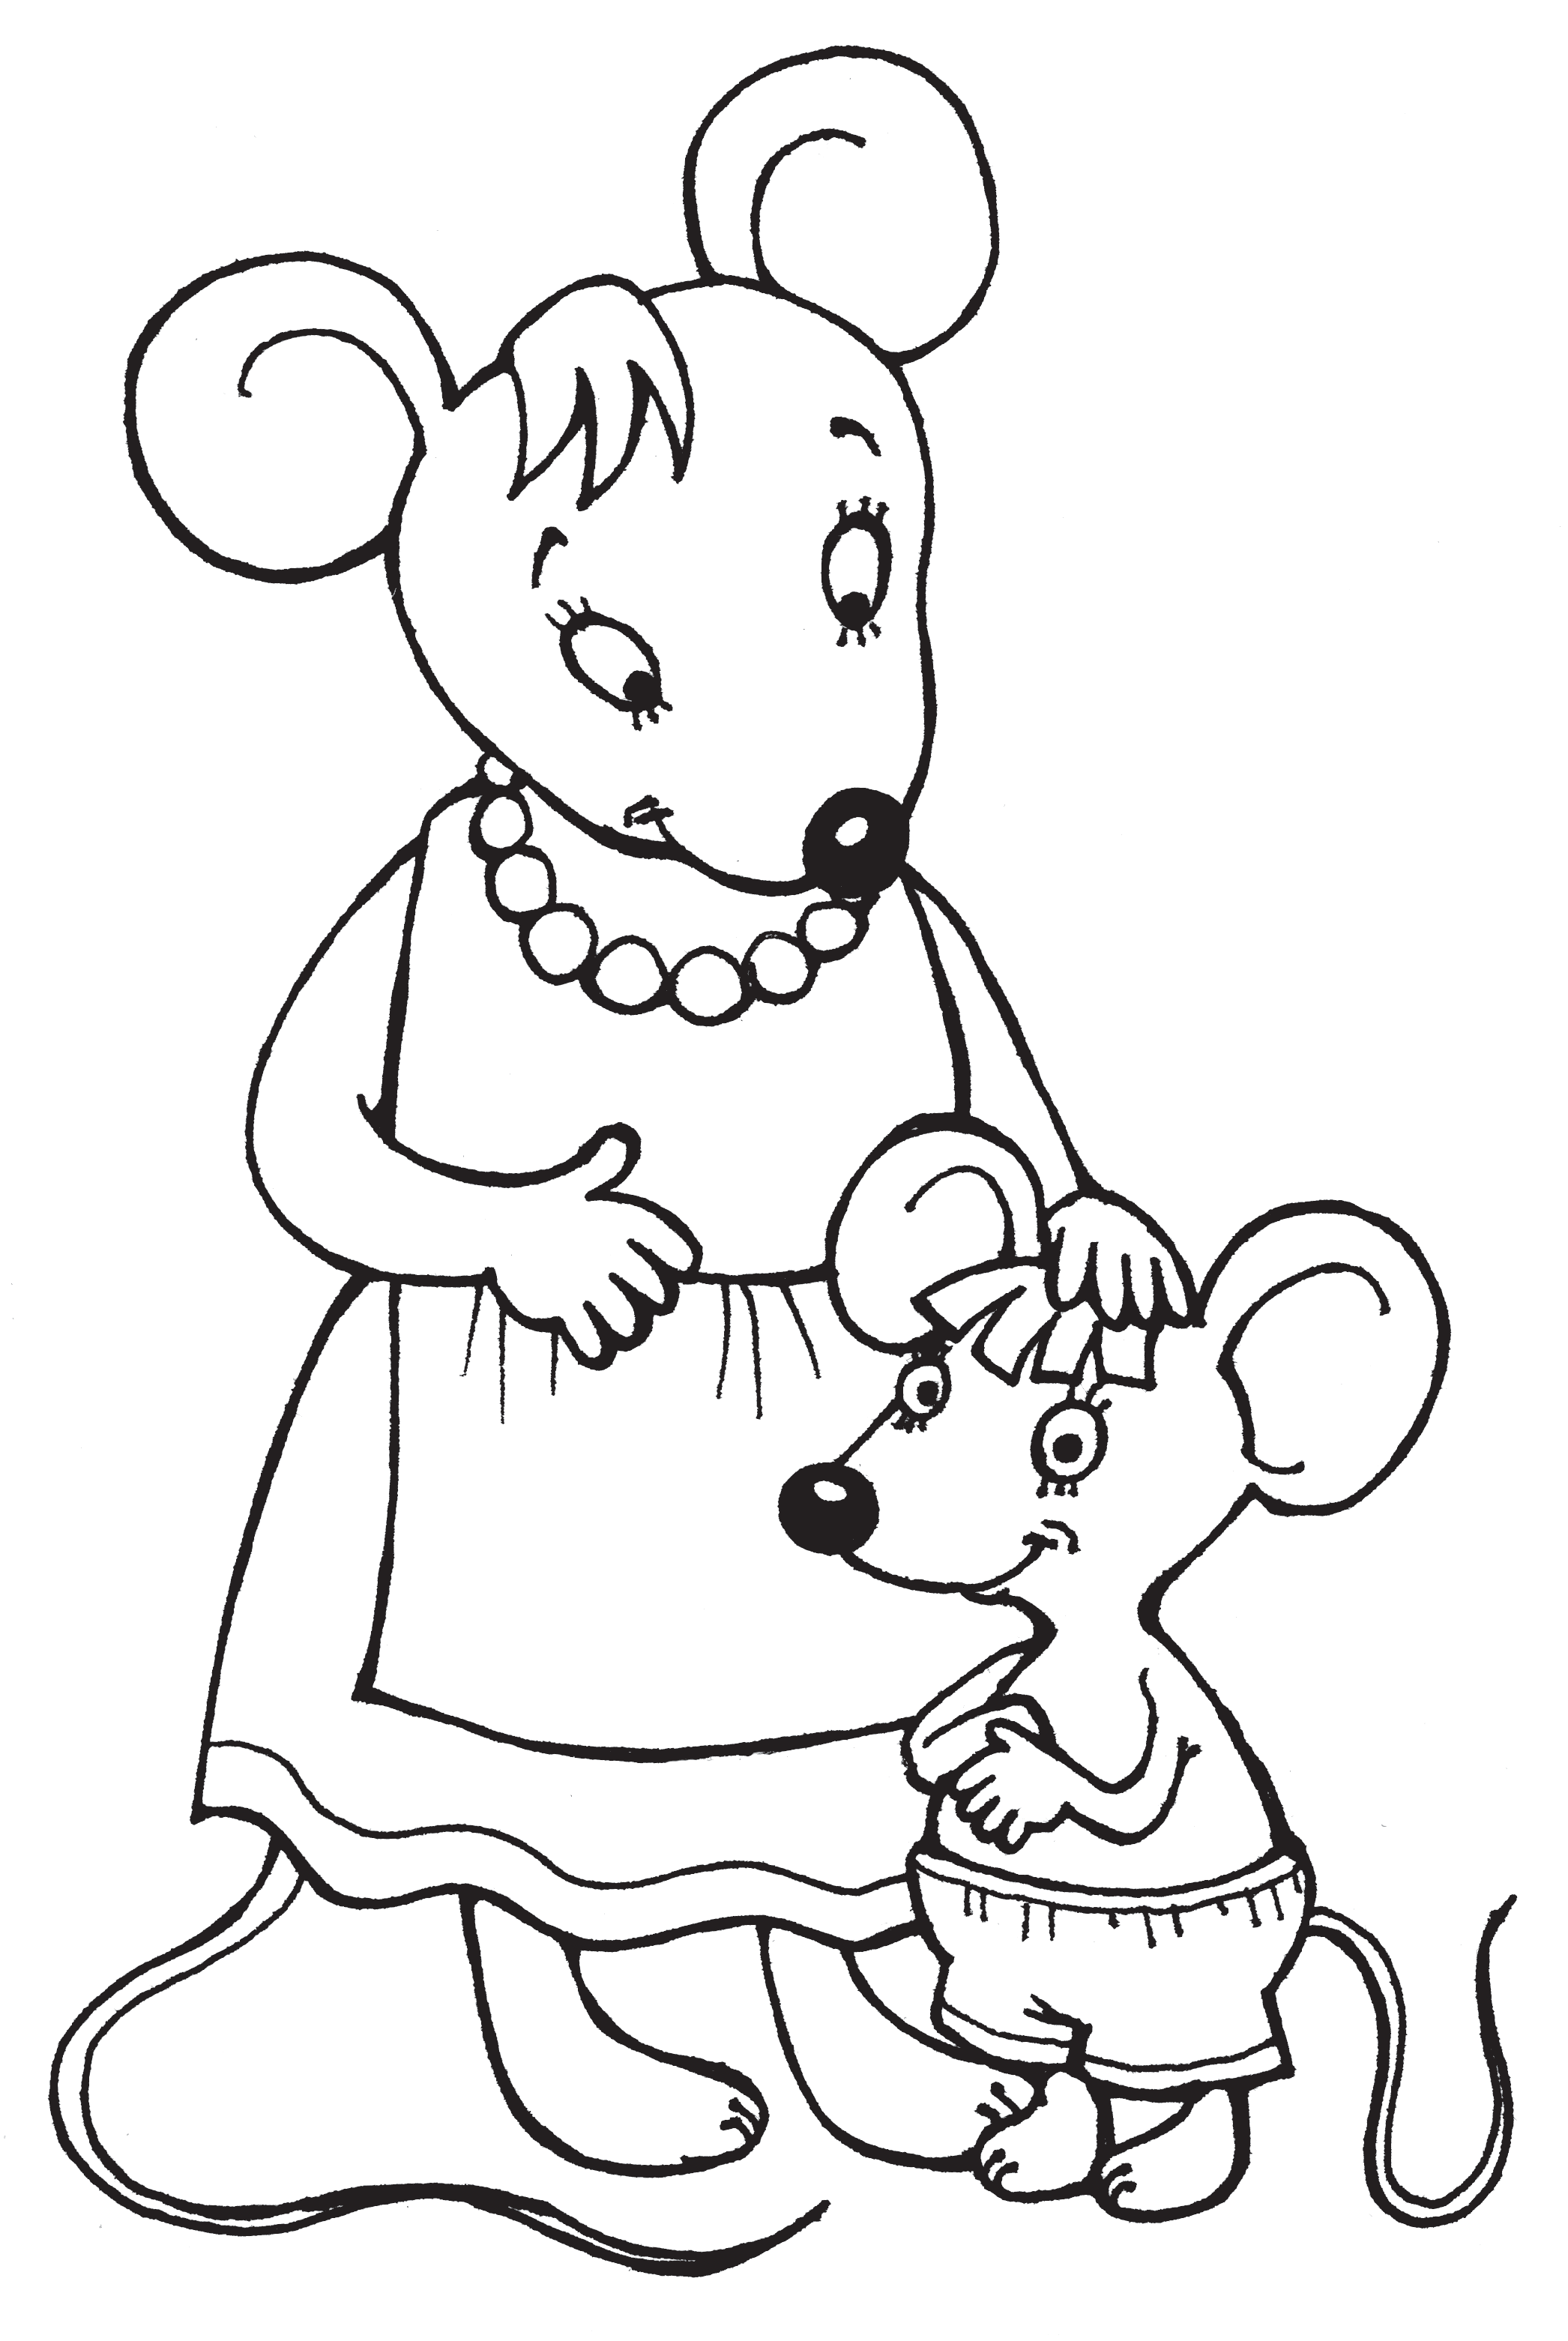 Глупая раскраска. Мышка в сказке о глупом мышонке раскраска. Маршак сказка о глупом мышонке раскраска. Мышка норушка раскраска. Мышь раскраска для детей.